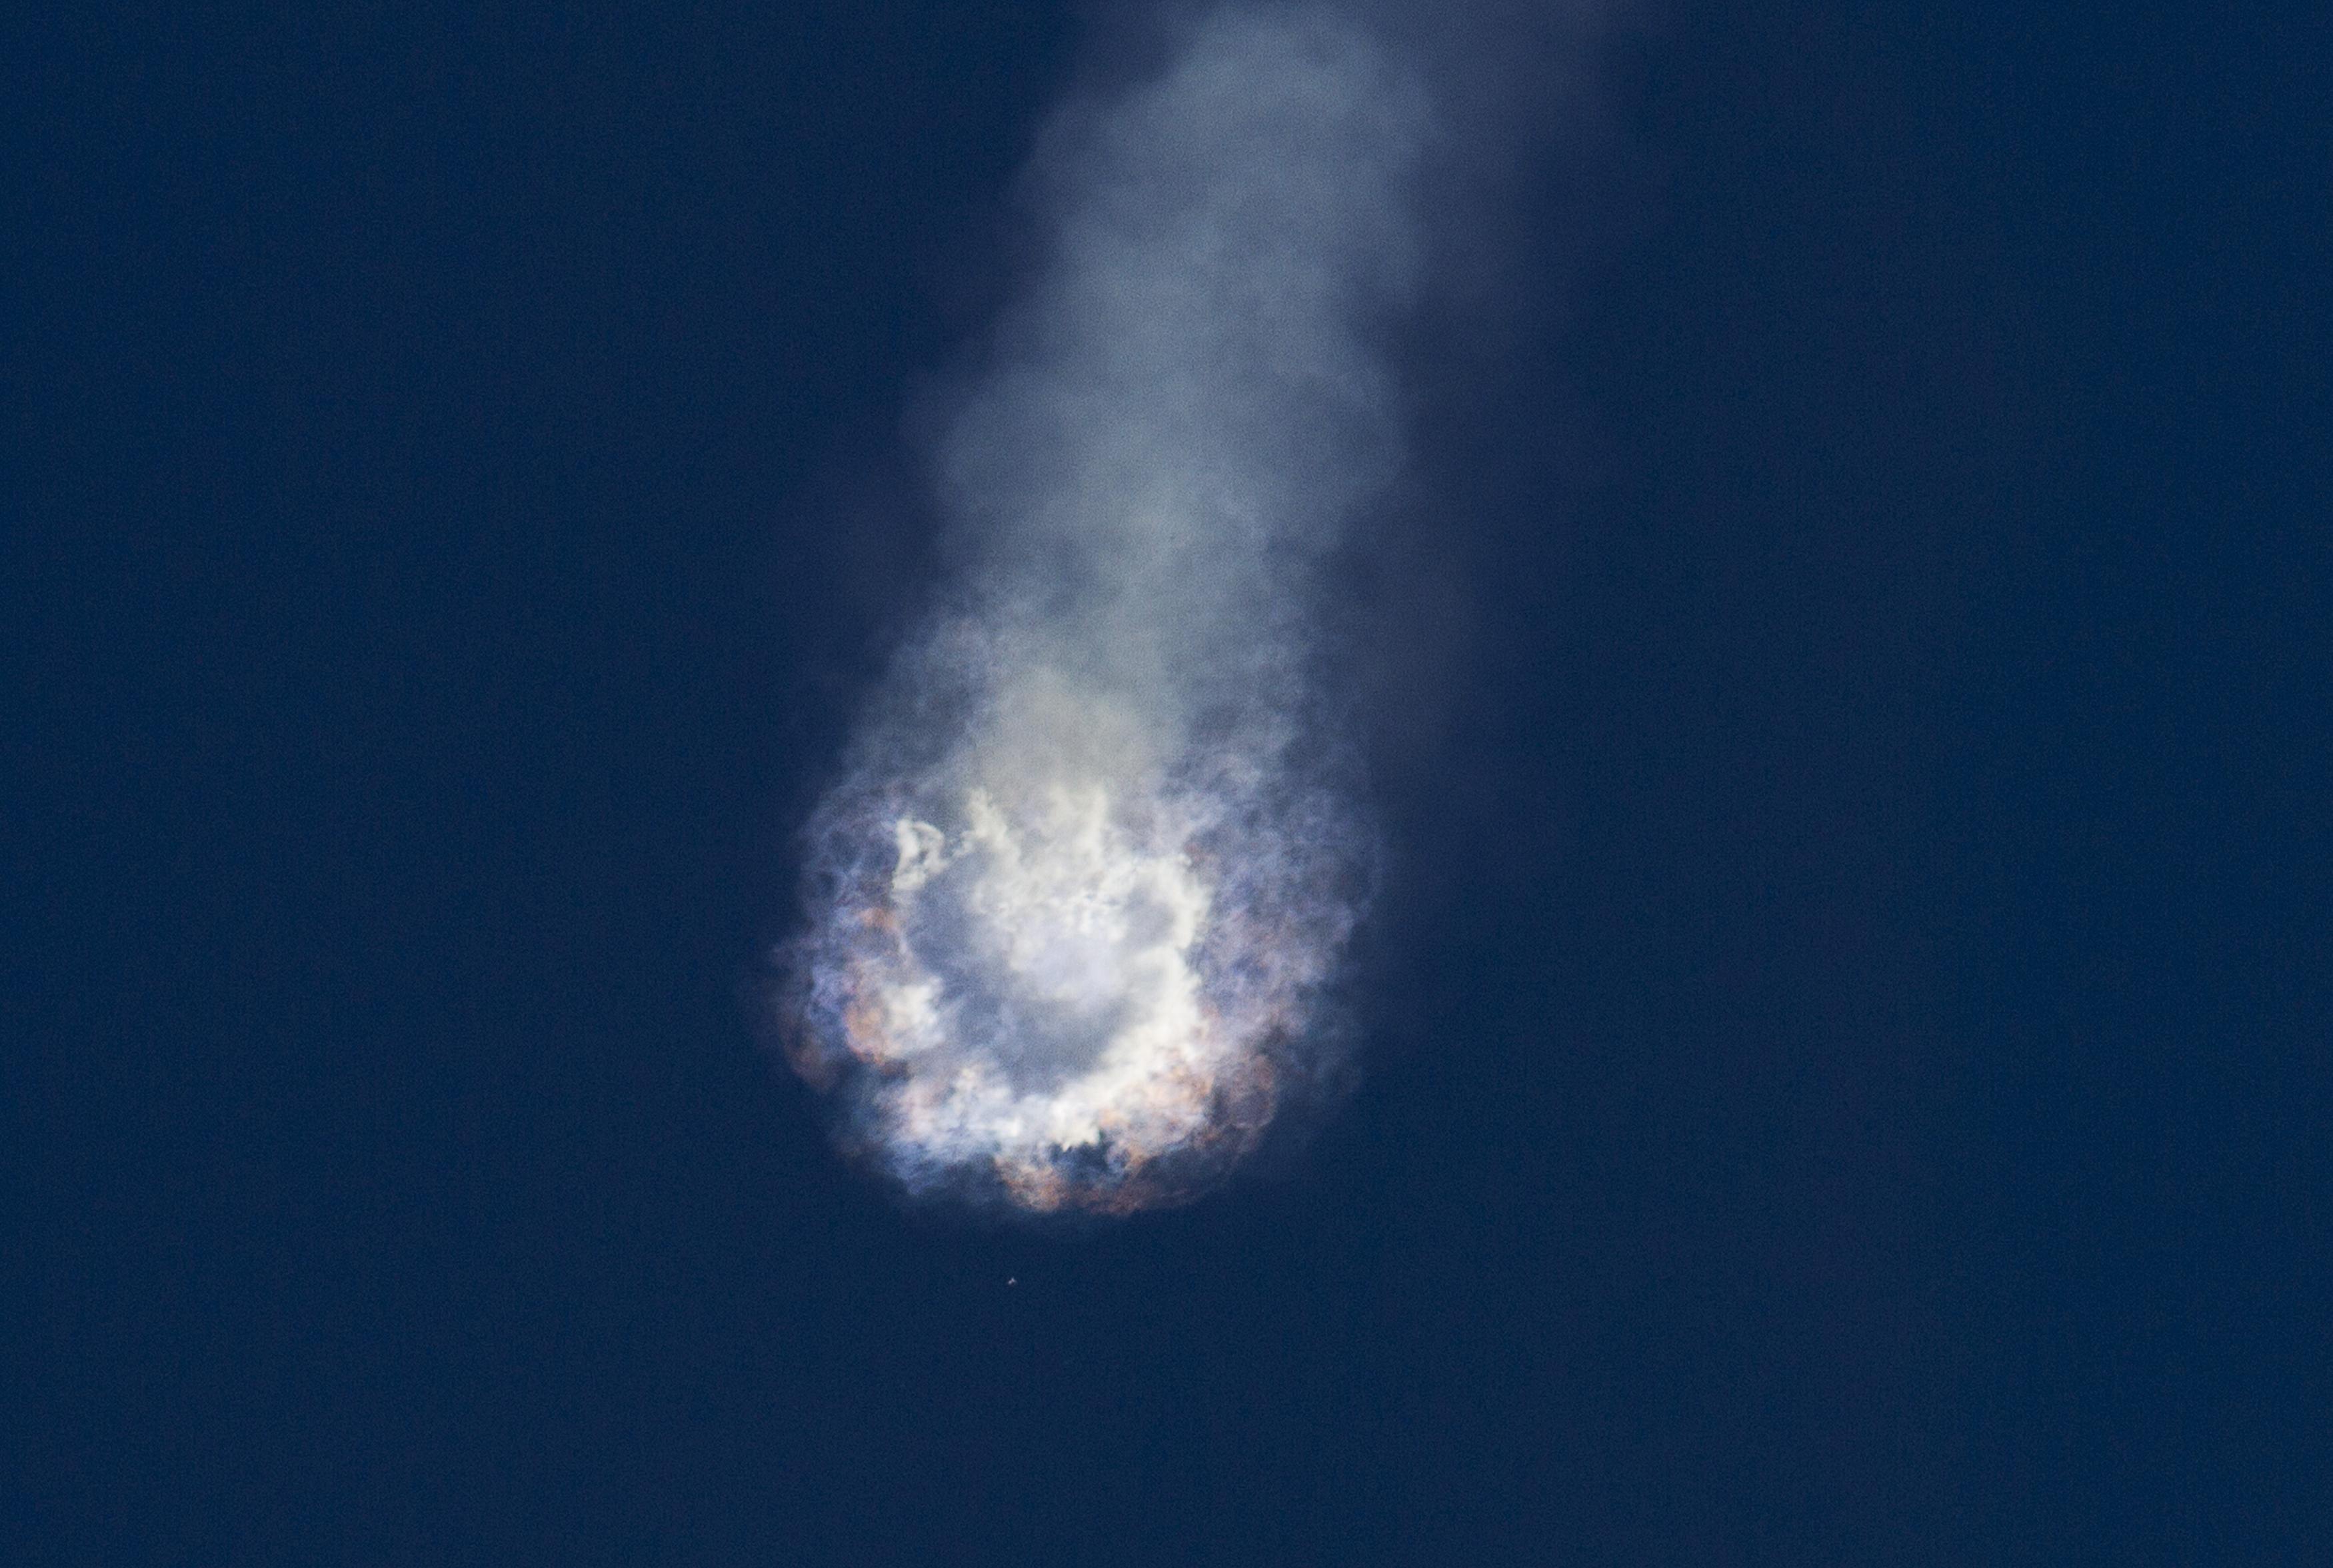 Explota el cohete SpaceX Falcon 9, minutos después del despegue (Fotos)